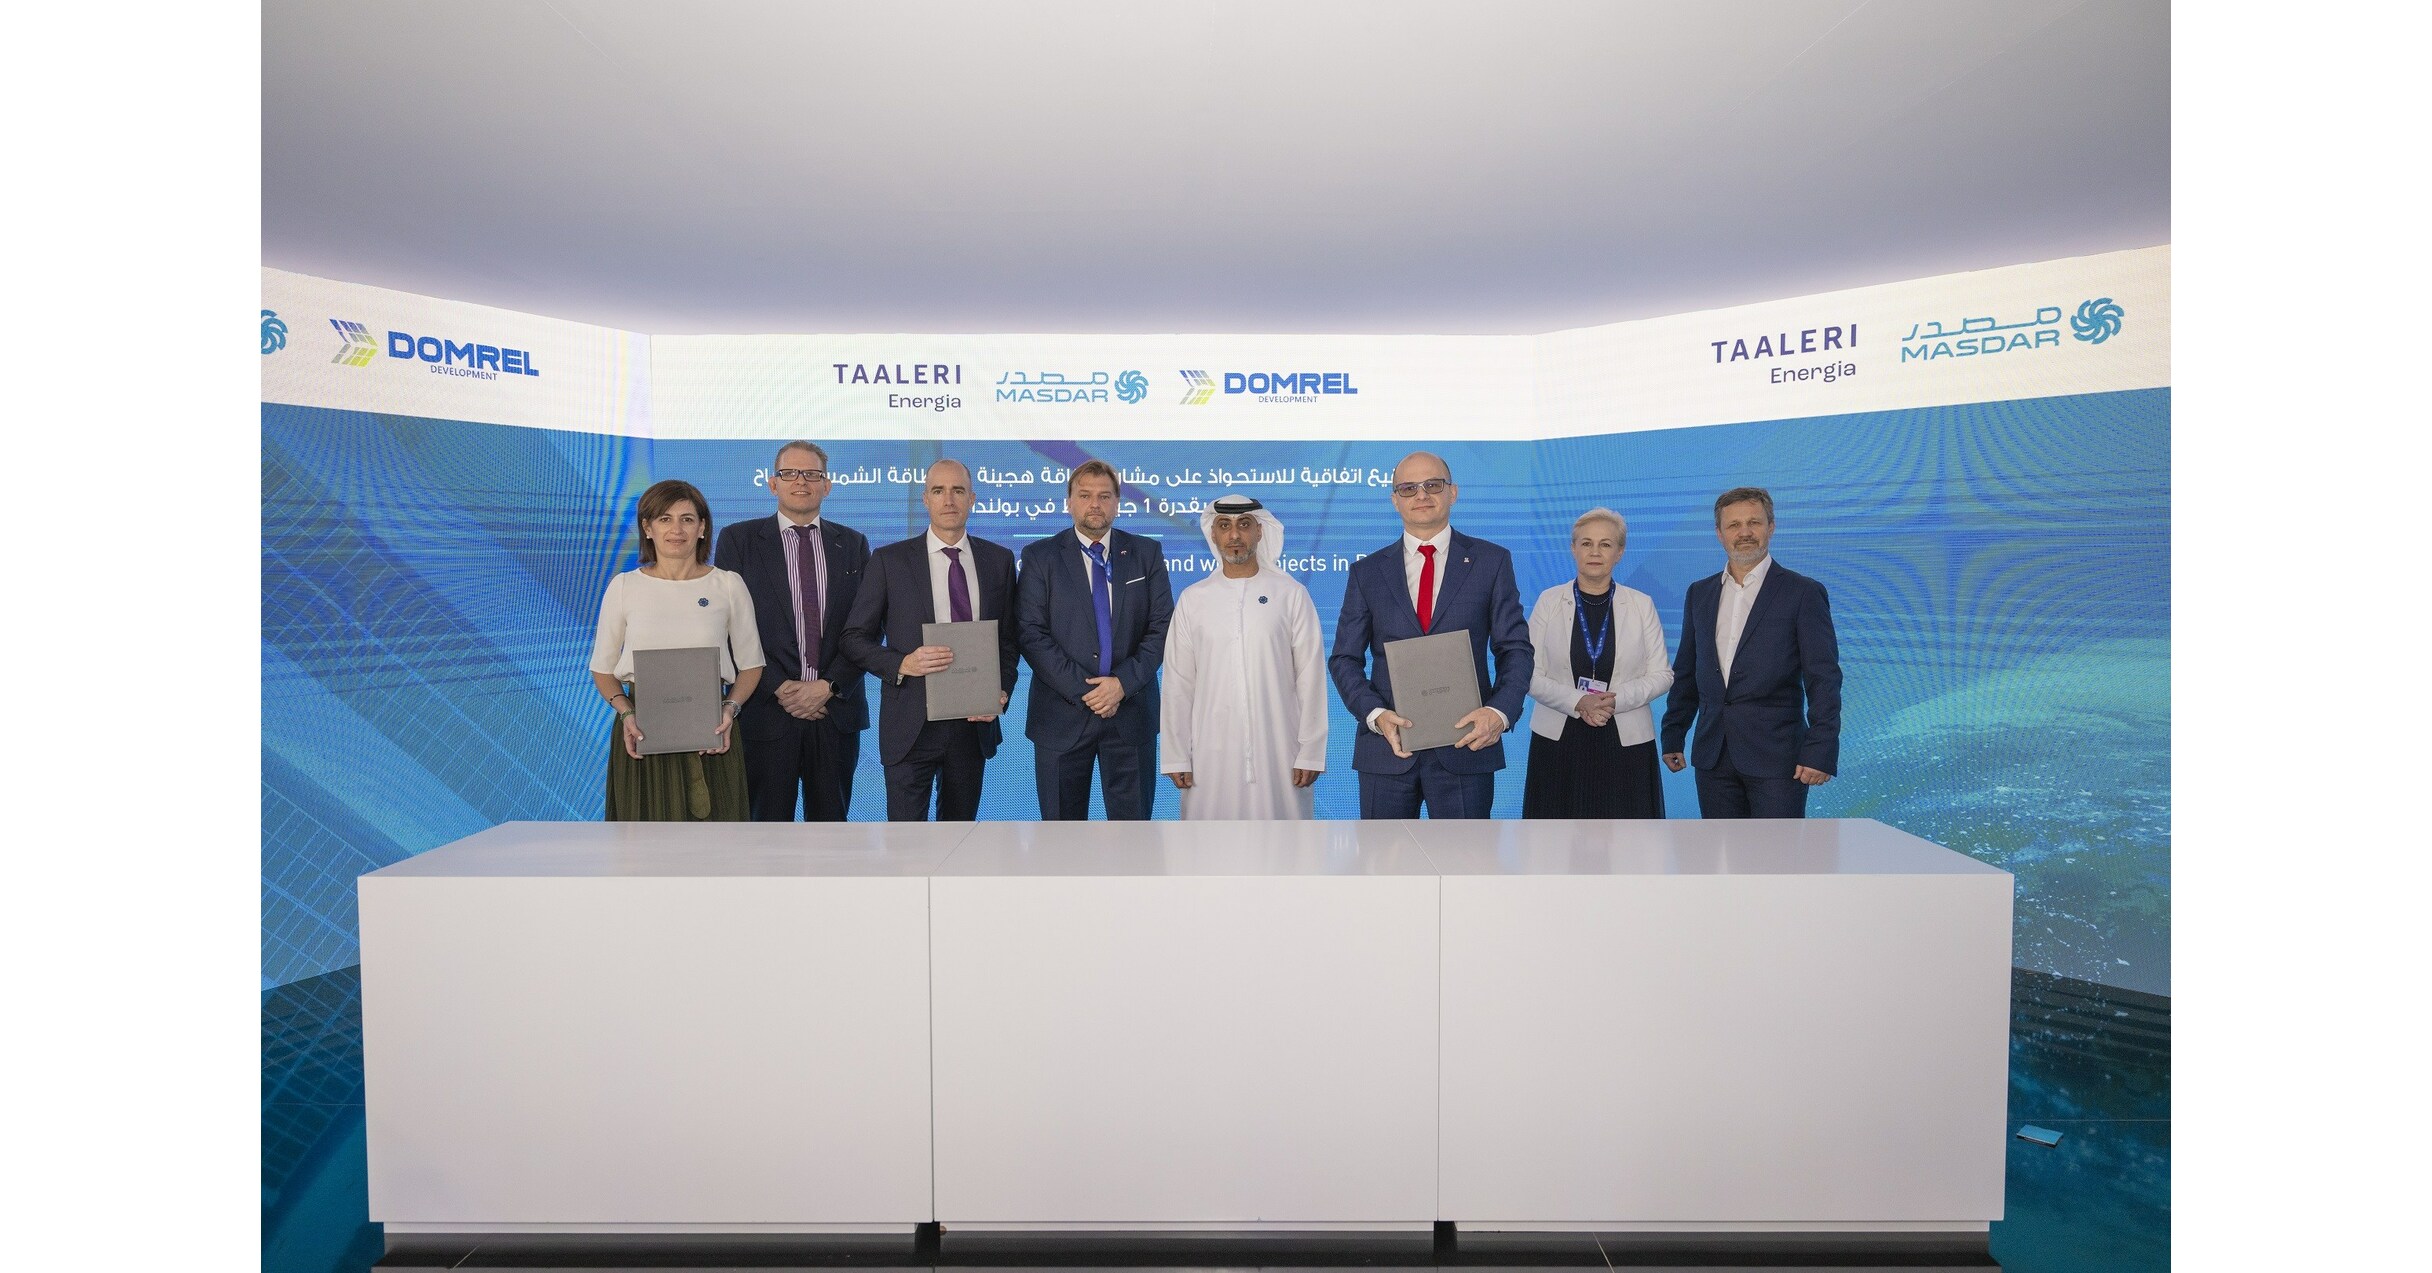 Masdar rozszerza swoją obecność w Europie poprzez nabycie portfela energii odnawialnej o mocy 1 GW w Polsce